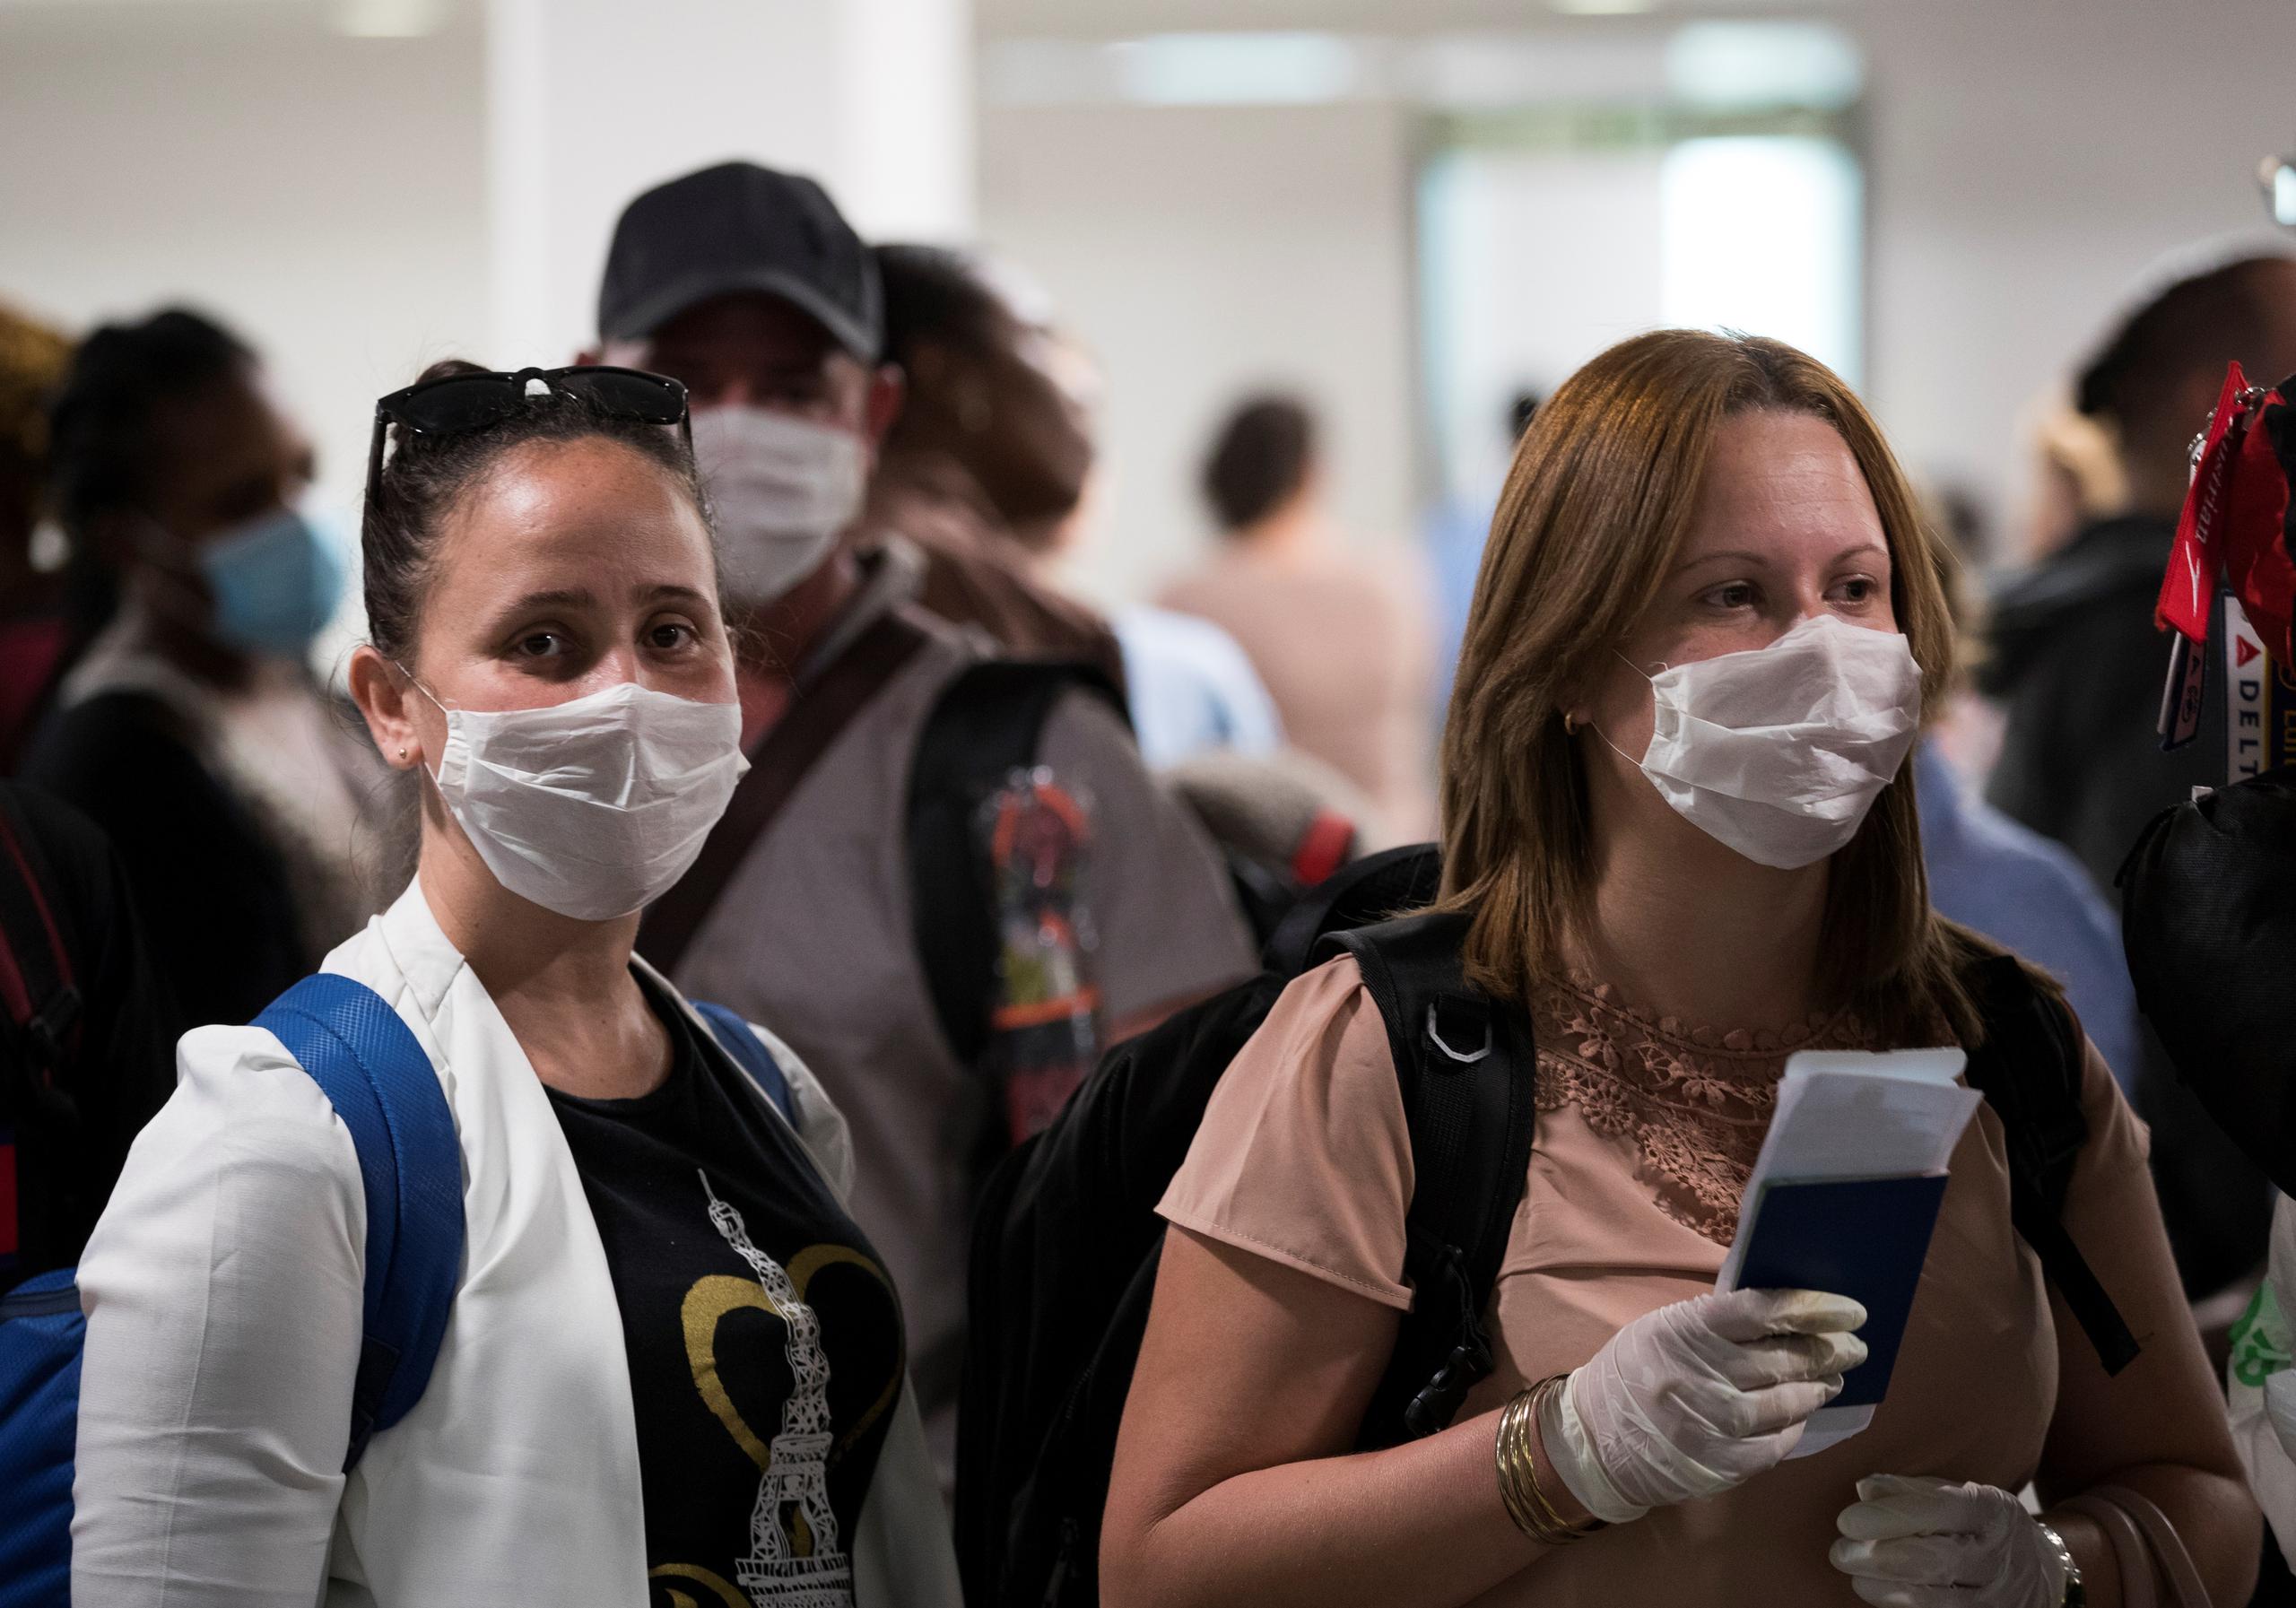 Las primeras tres pruebas realizadas en los aeropuertos dieron resultados negativos. Aun así, los casos siguen bajo vigilancia del Departamento de Salud y médicos de familia, informó.